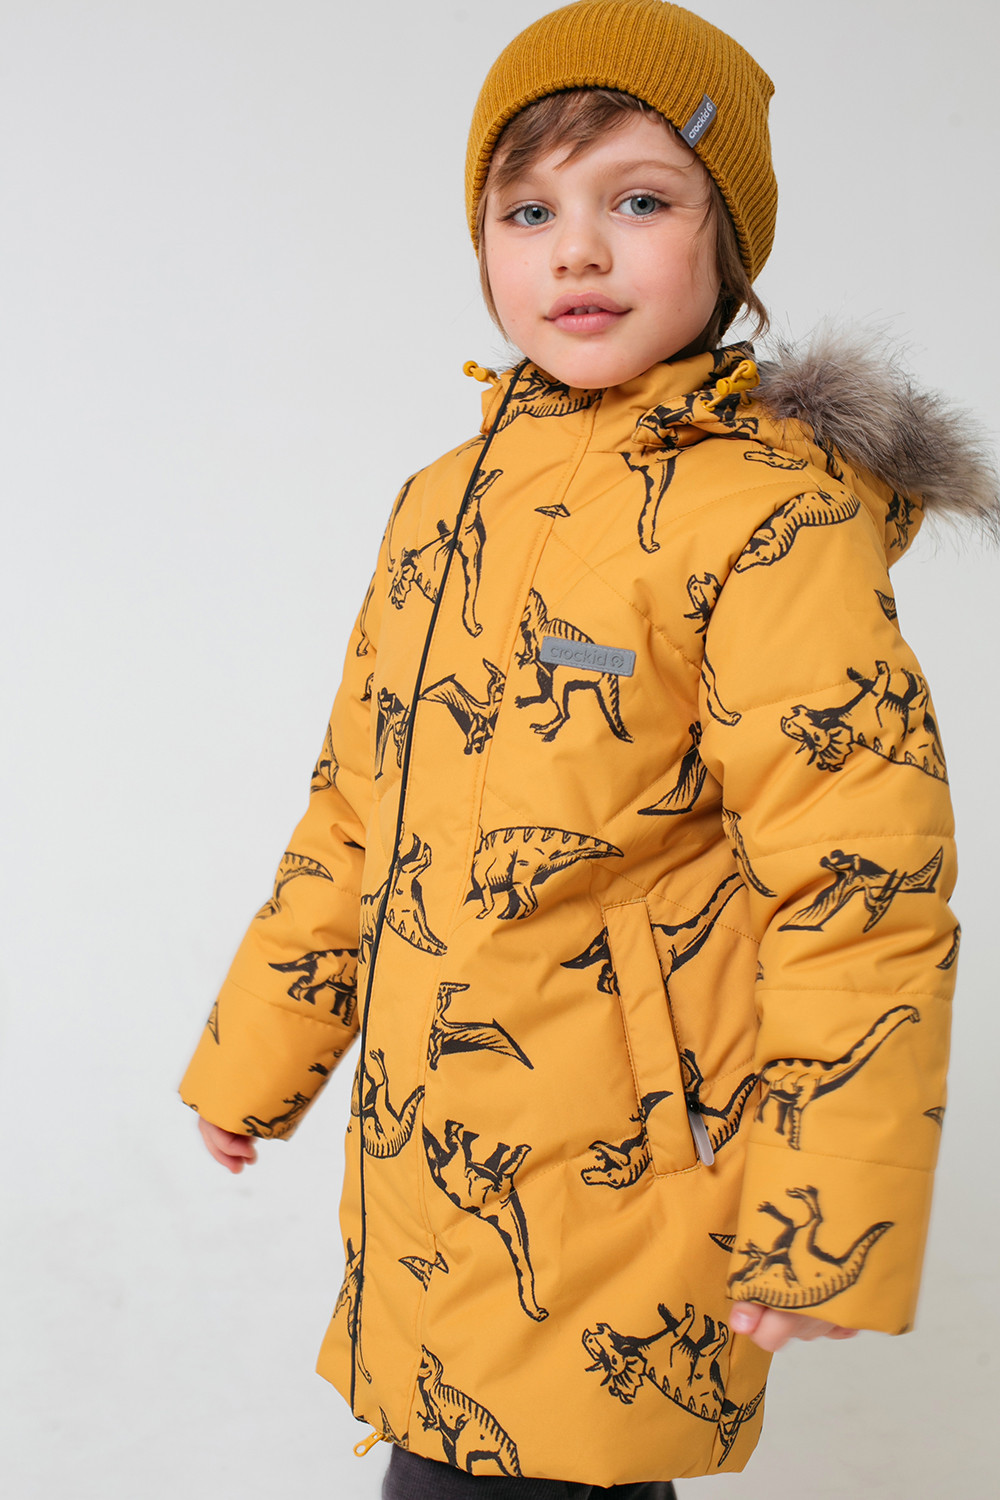 36056/н/1 ВК ГР Куртка для мальчика зима детская купить